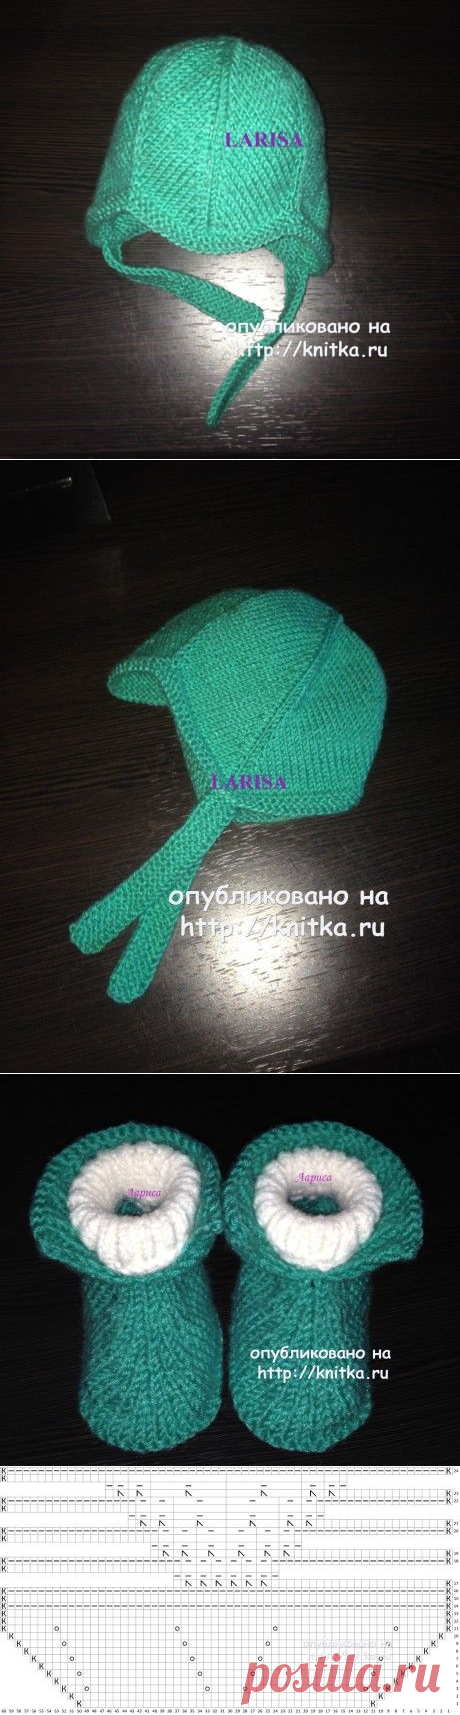 Вязаная шапочка и пинетки – работы Ларисы Величко, Вязание для детей